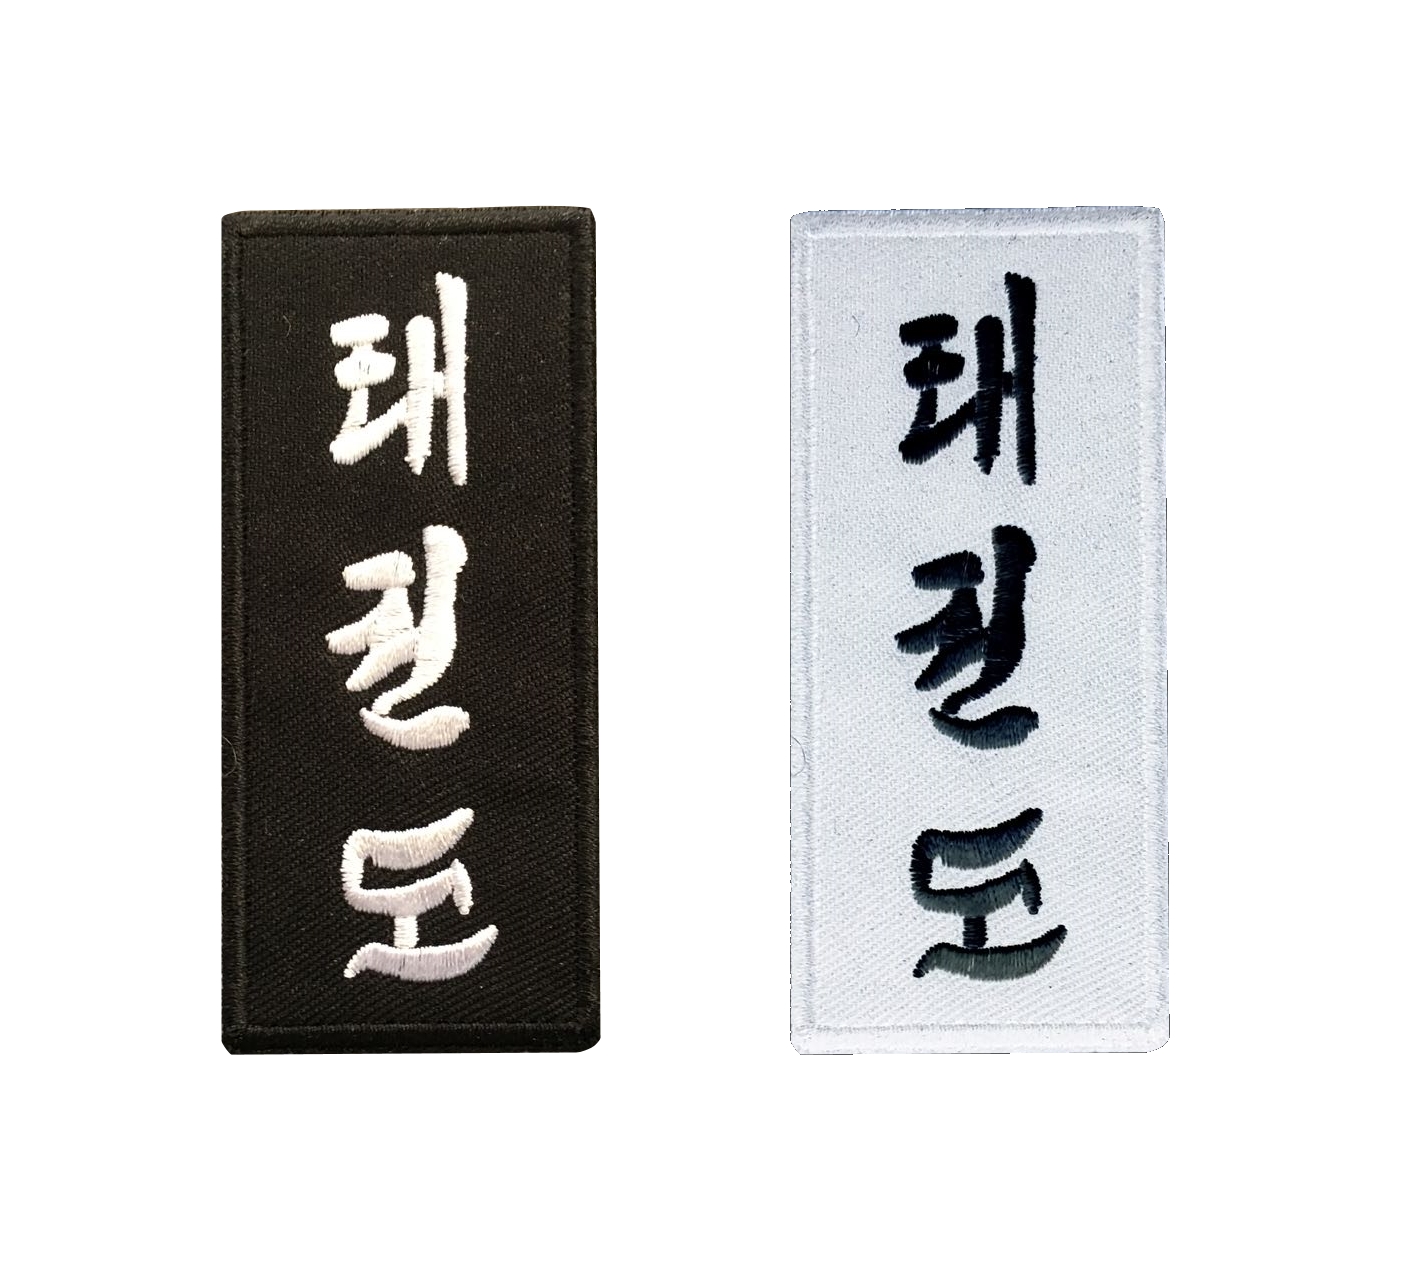 Taekwondo Schriftzeichen Aufnäher weiß mit schwarzen Schriftzeichen